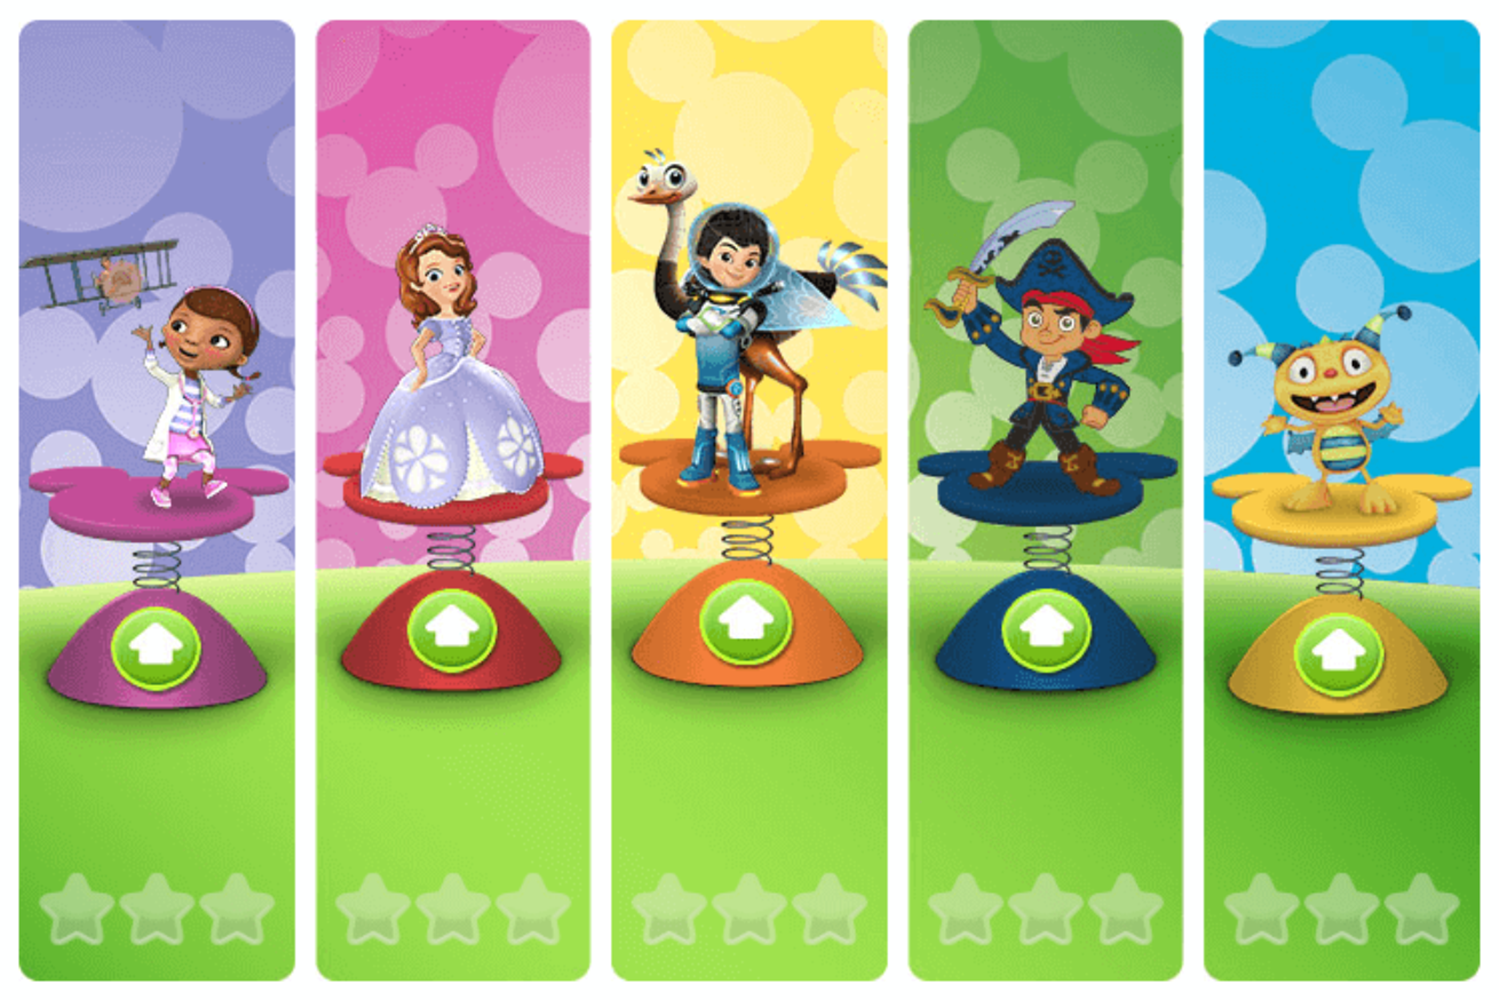 Disney Jr Big Air Adventure Game Level Select Screenshot.